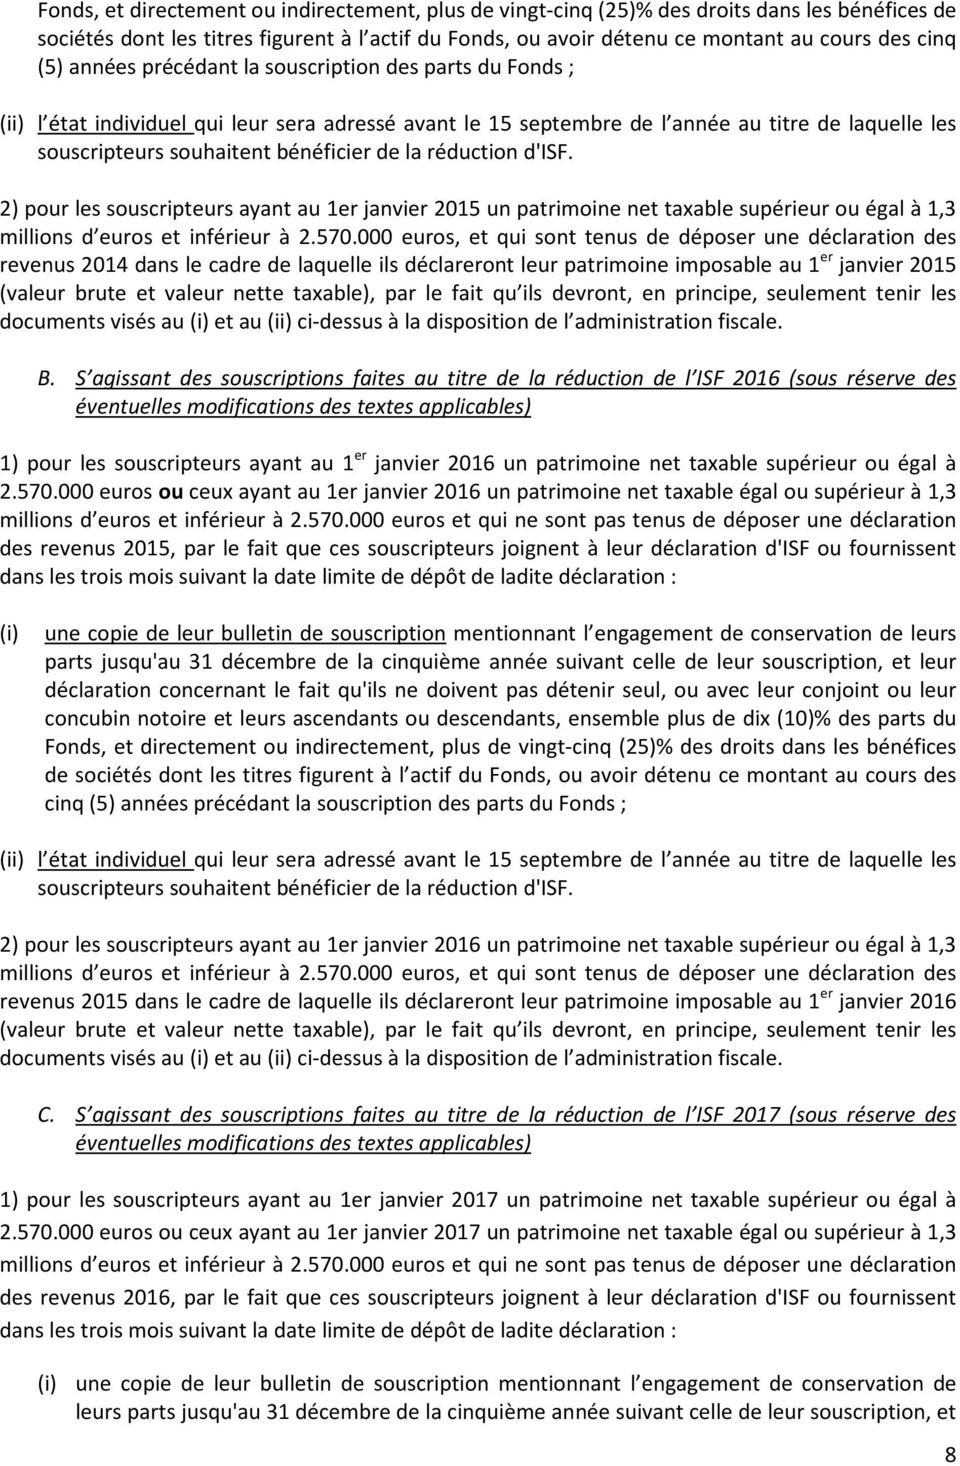 la réduction d'isf. 2) pour les souscripteurs ayant au 1er janvier 2015 un patrimoine net taxable supérieur ou égal à 1,3 millions d euros et inférieur à 2.570.